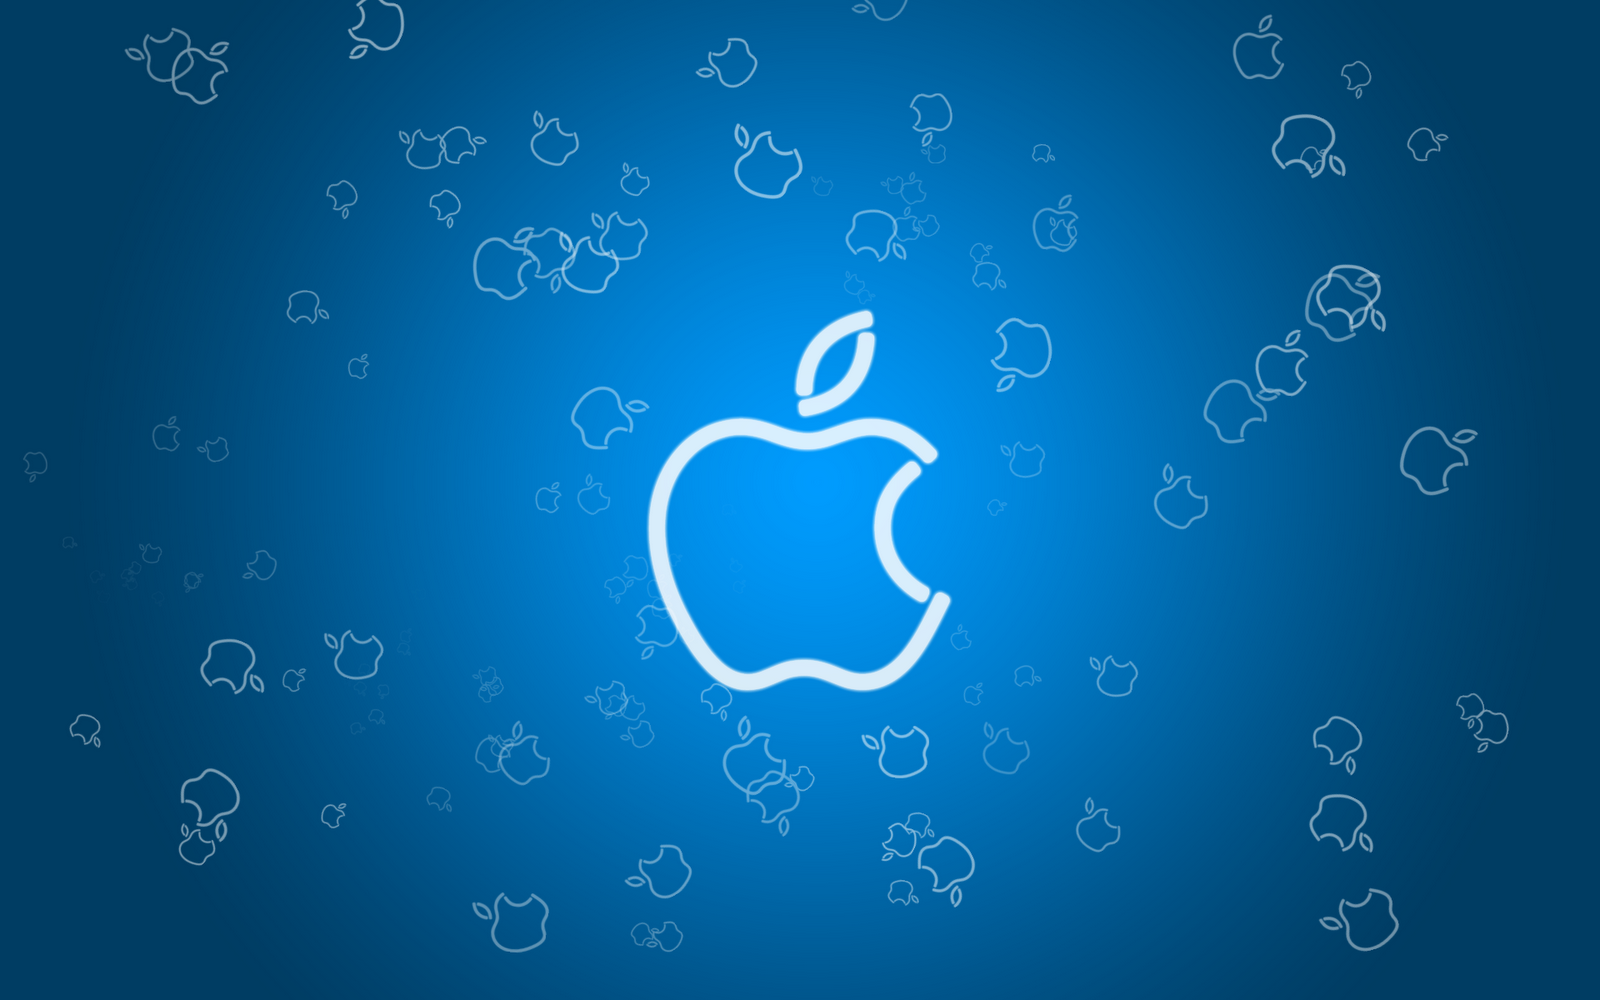 Blue Apple Logo Wallpaper Image Wallpaperlepi